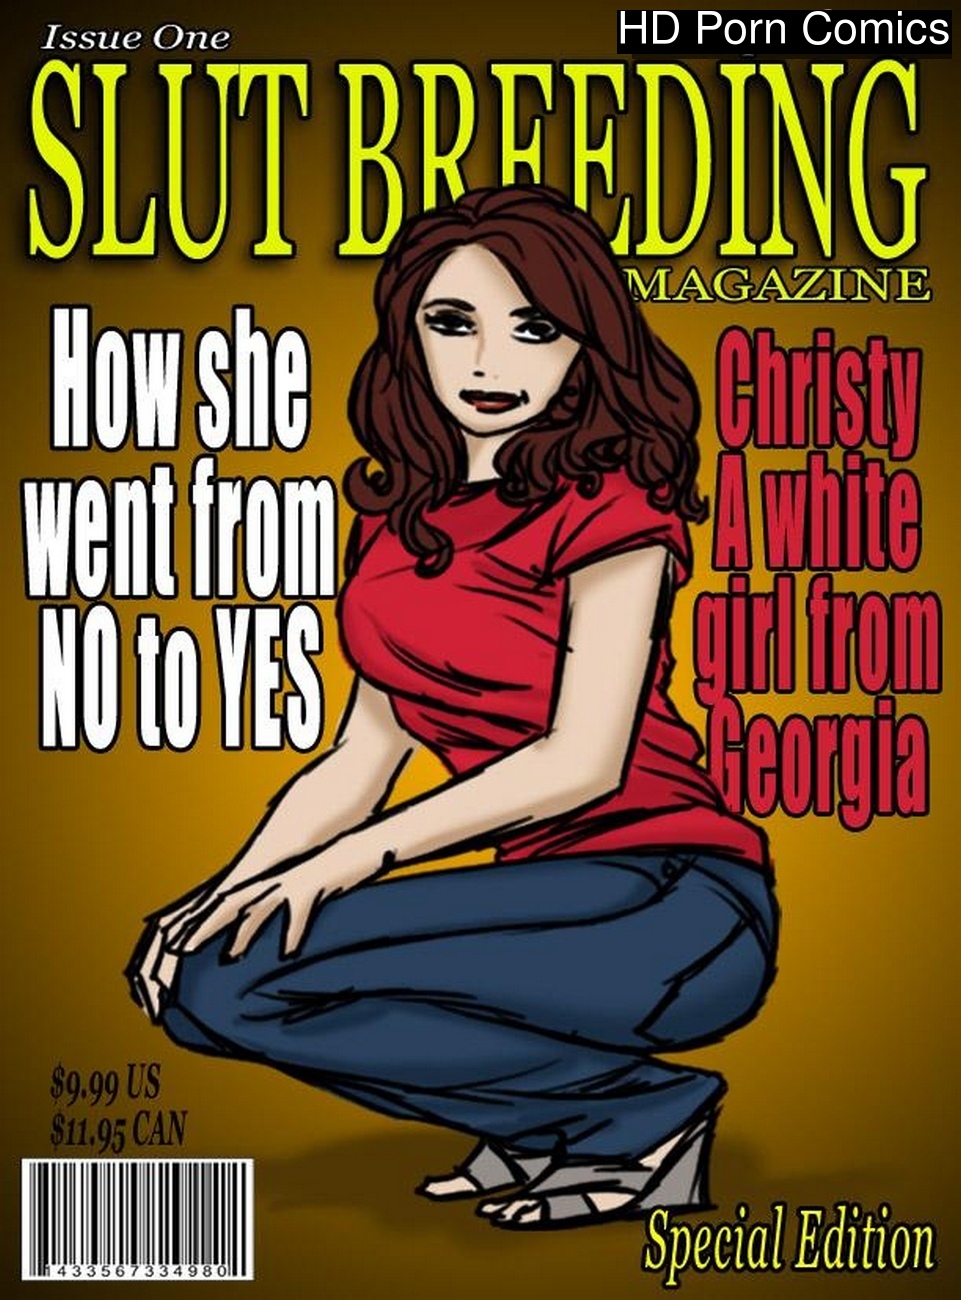 Slut Breeding 1 comic porn - HD Porn Comics